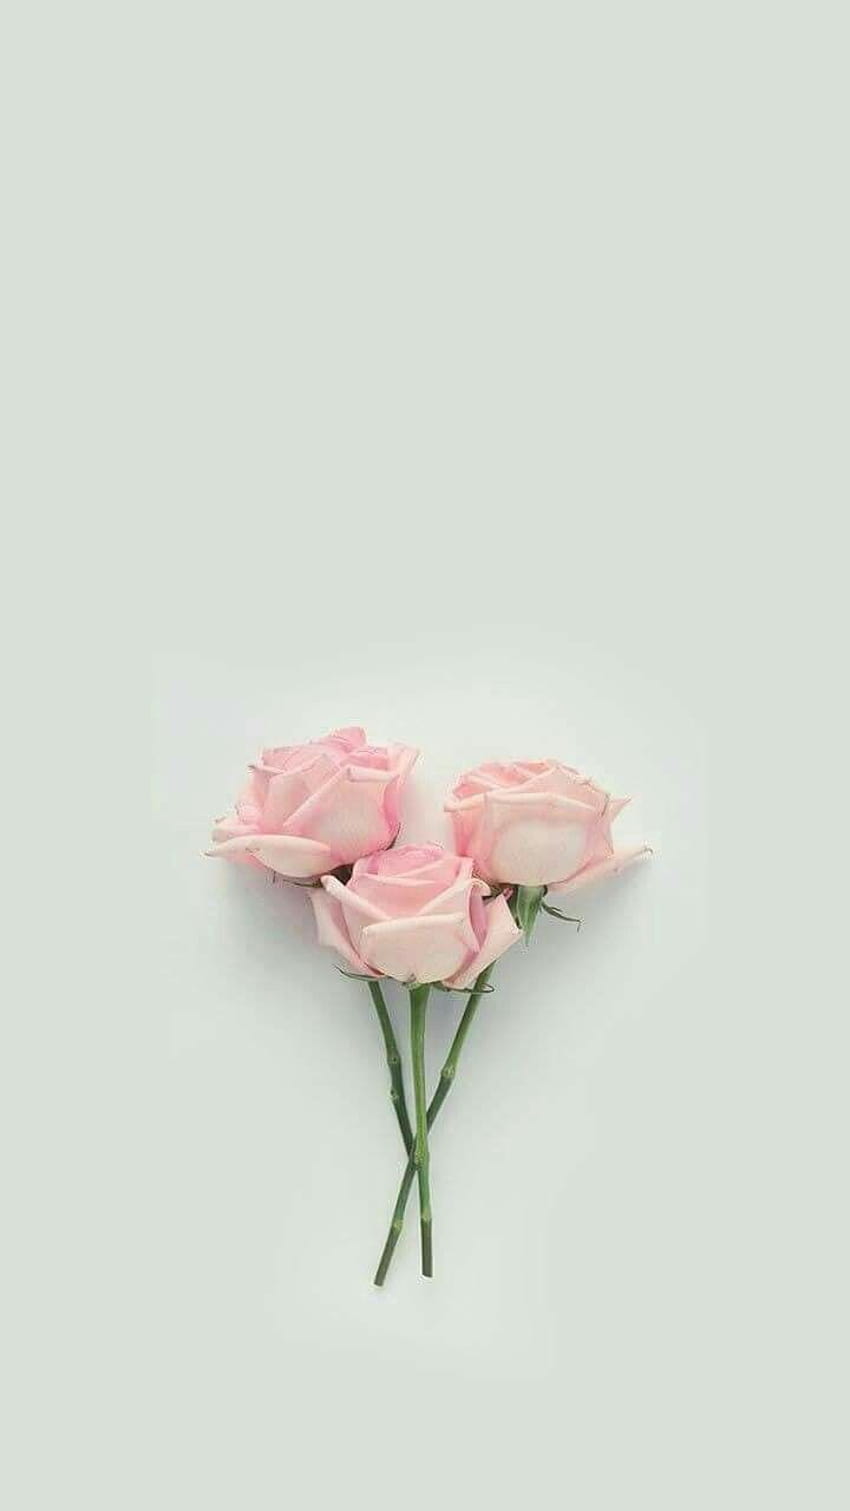 Artistry Rose, aesthetic rose HD phone wallpaper